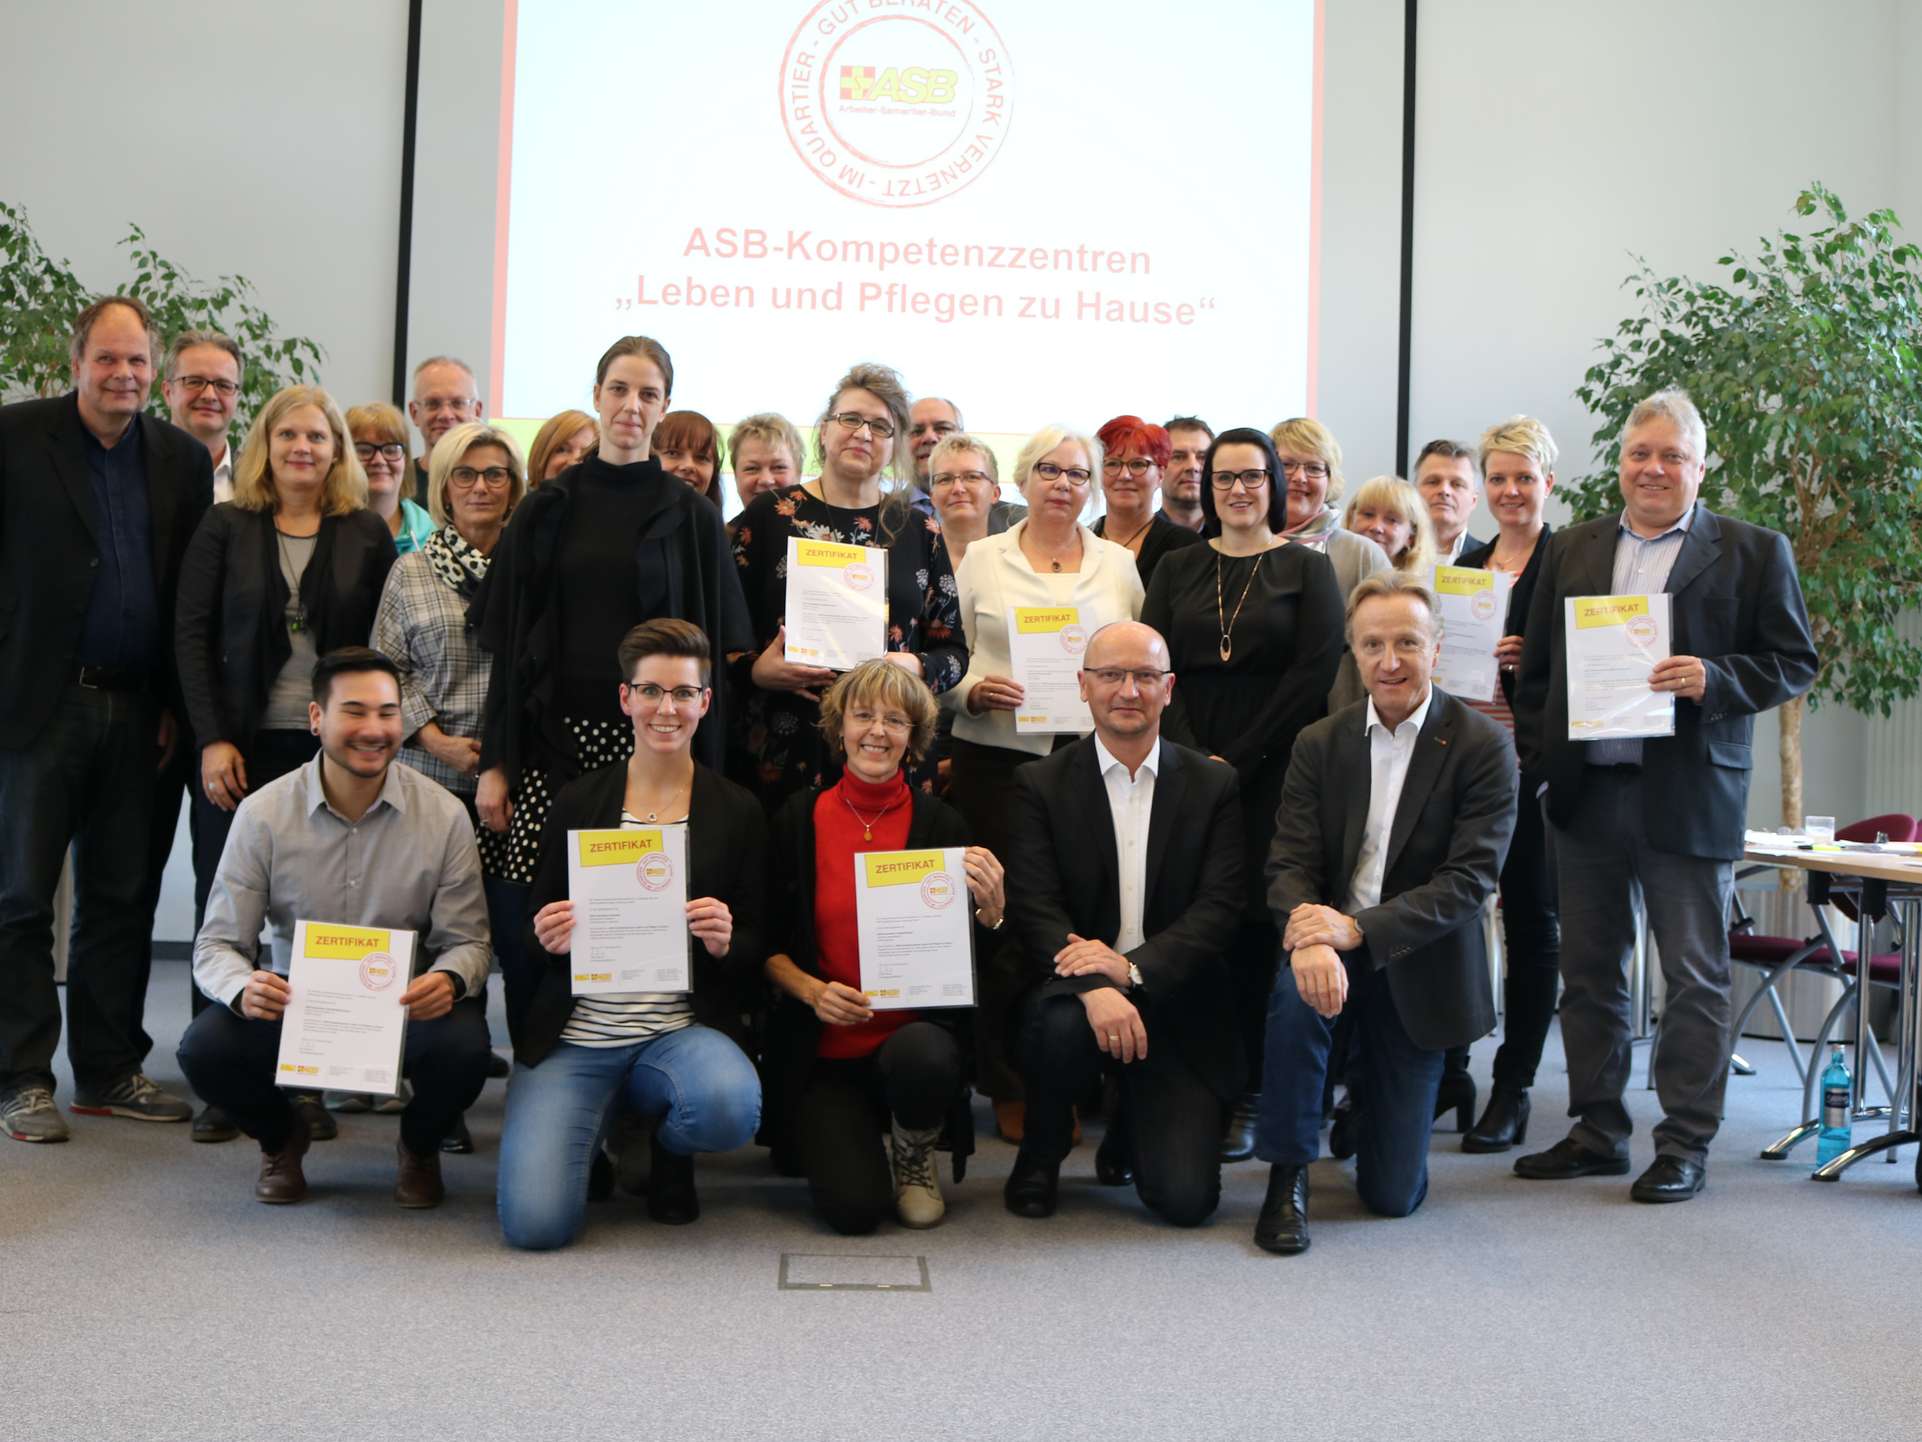 Nach erfolgreichem Abschluss in der Bundesgeschäftsstelle in Köln die Qualitätssiegel „Im Quartier - stark vernetzt - gut beraten“ an die acht ASB-Einrichtungen verliehen. Foto: ASB.